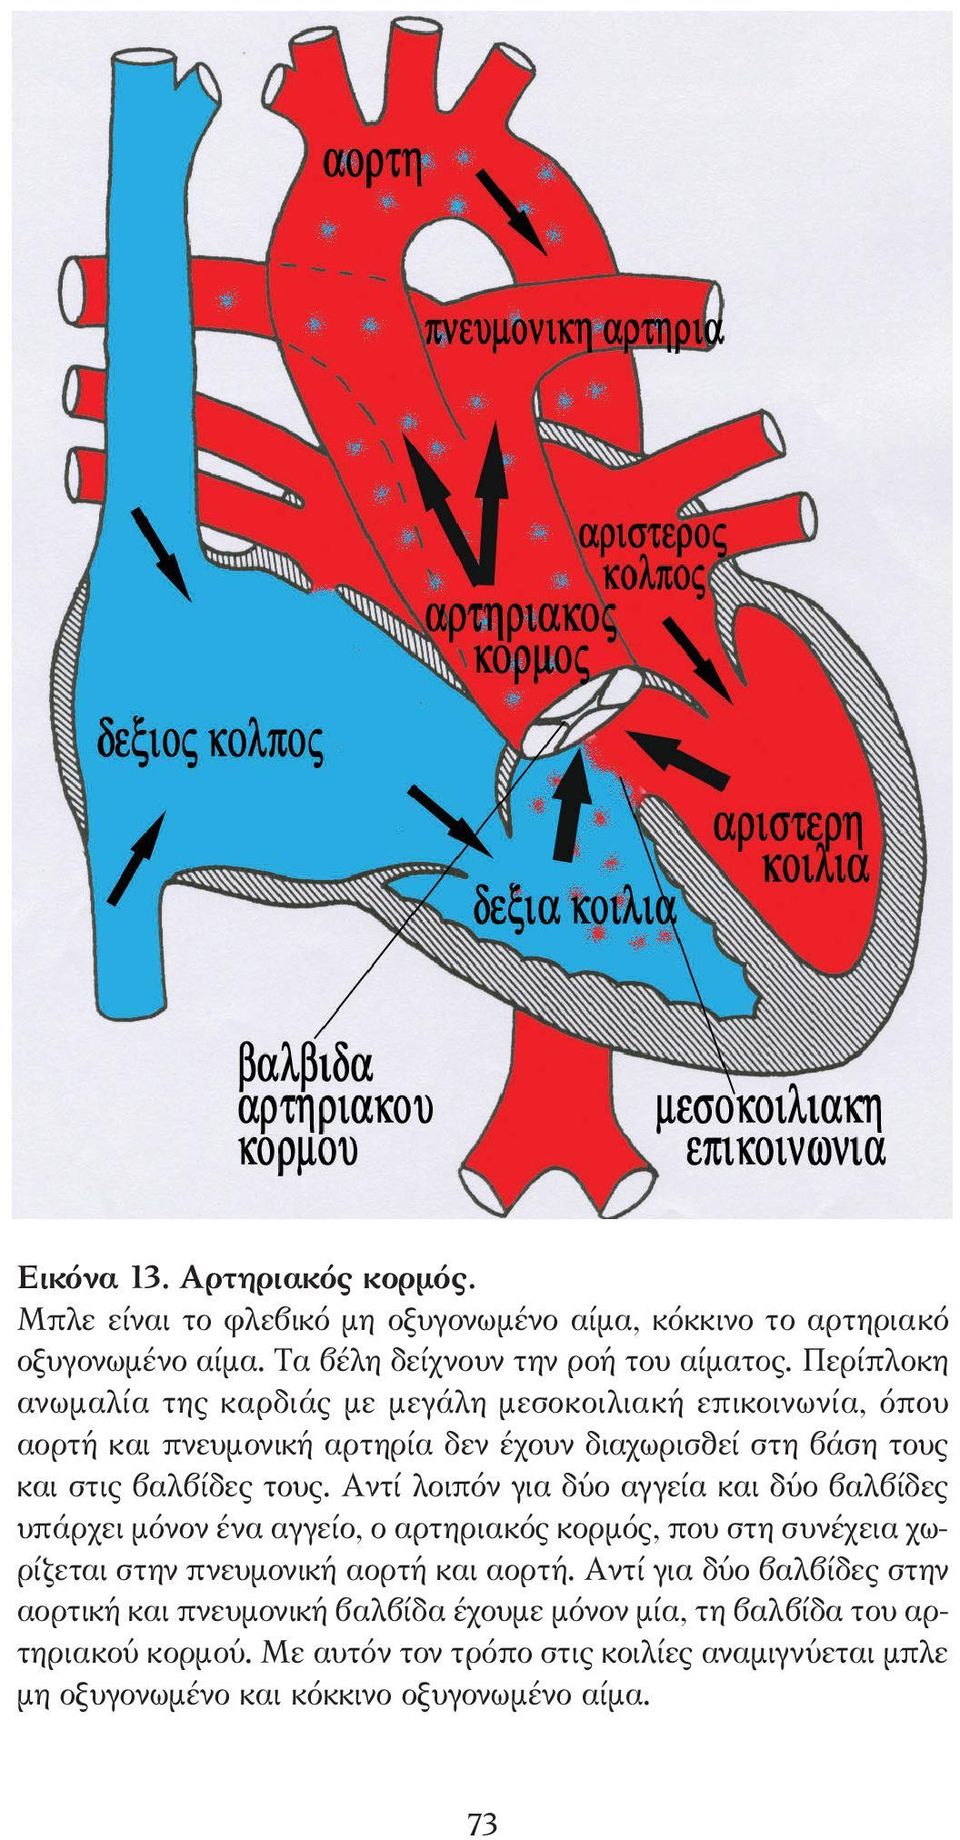 Αντί λοιπόν για δύο αγγεία και δύο βαλβίδες υπάρχει µόνον ένα αγγείο, ο αρτηριακός κορµός, που στη συνέχεια χωρίζεται στην πνευµονική αορτή και αορτή.